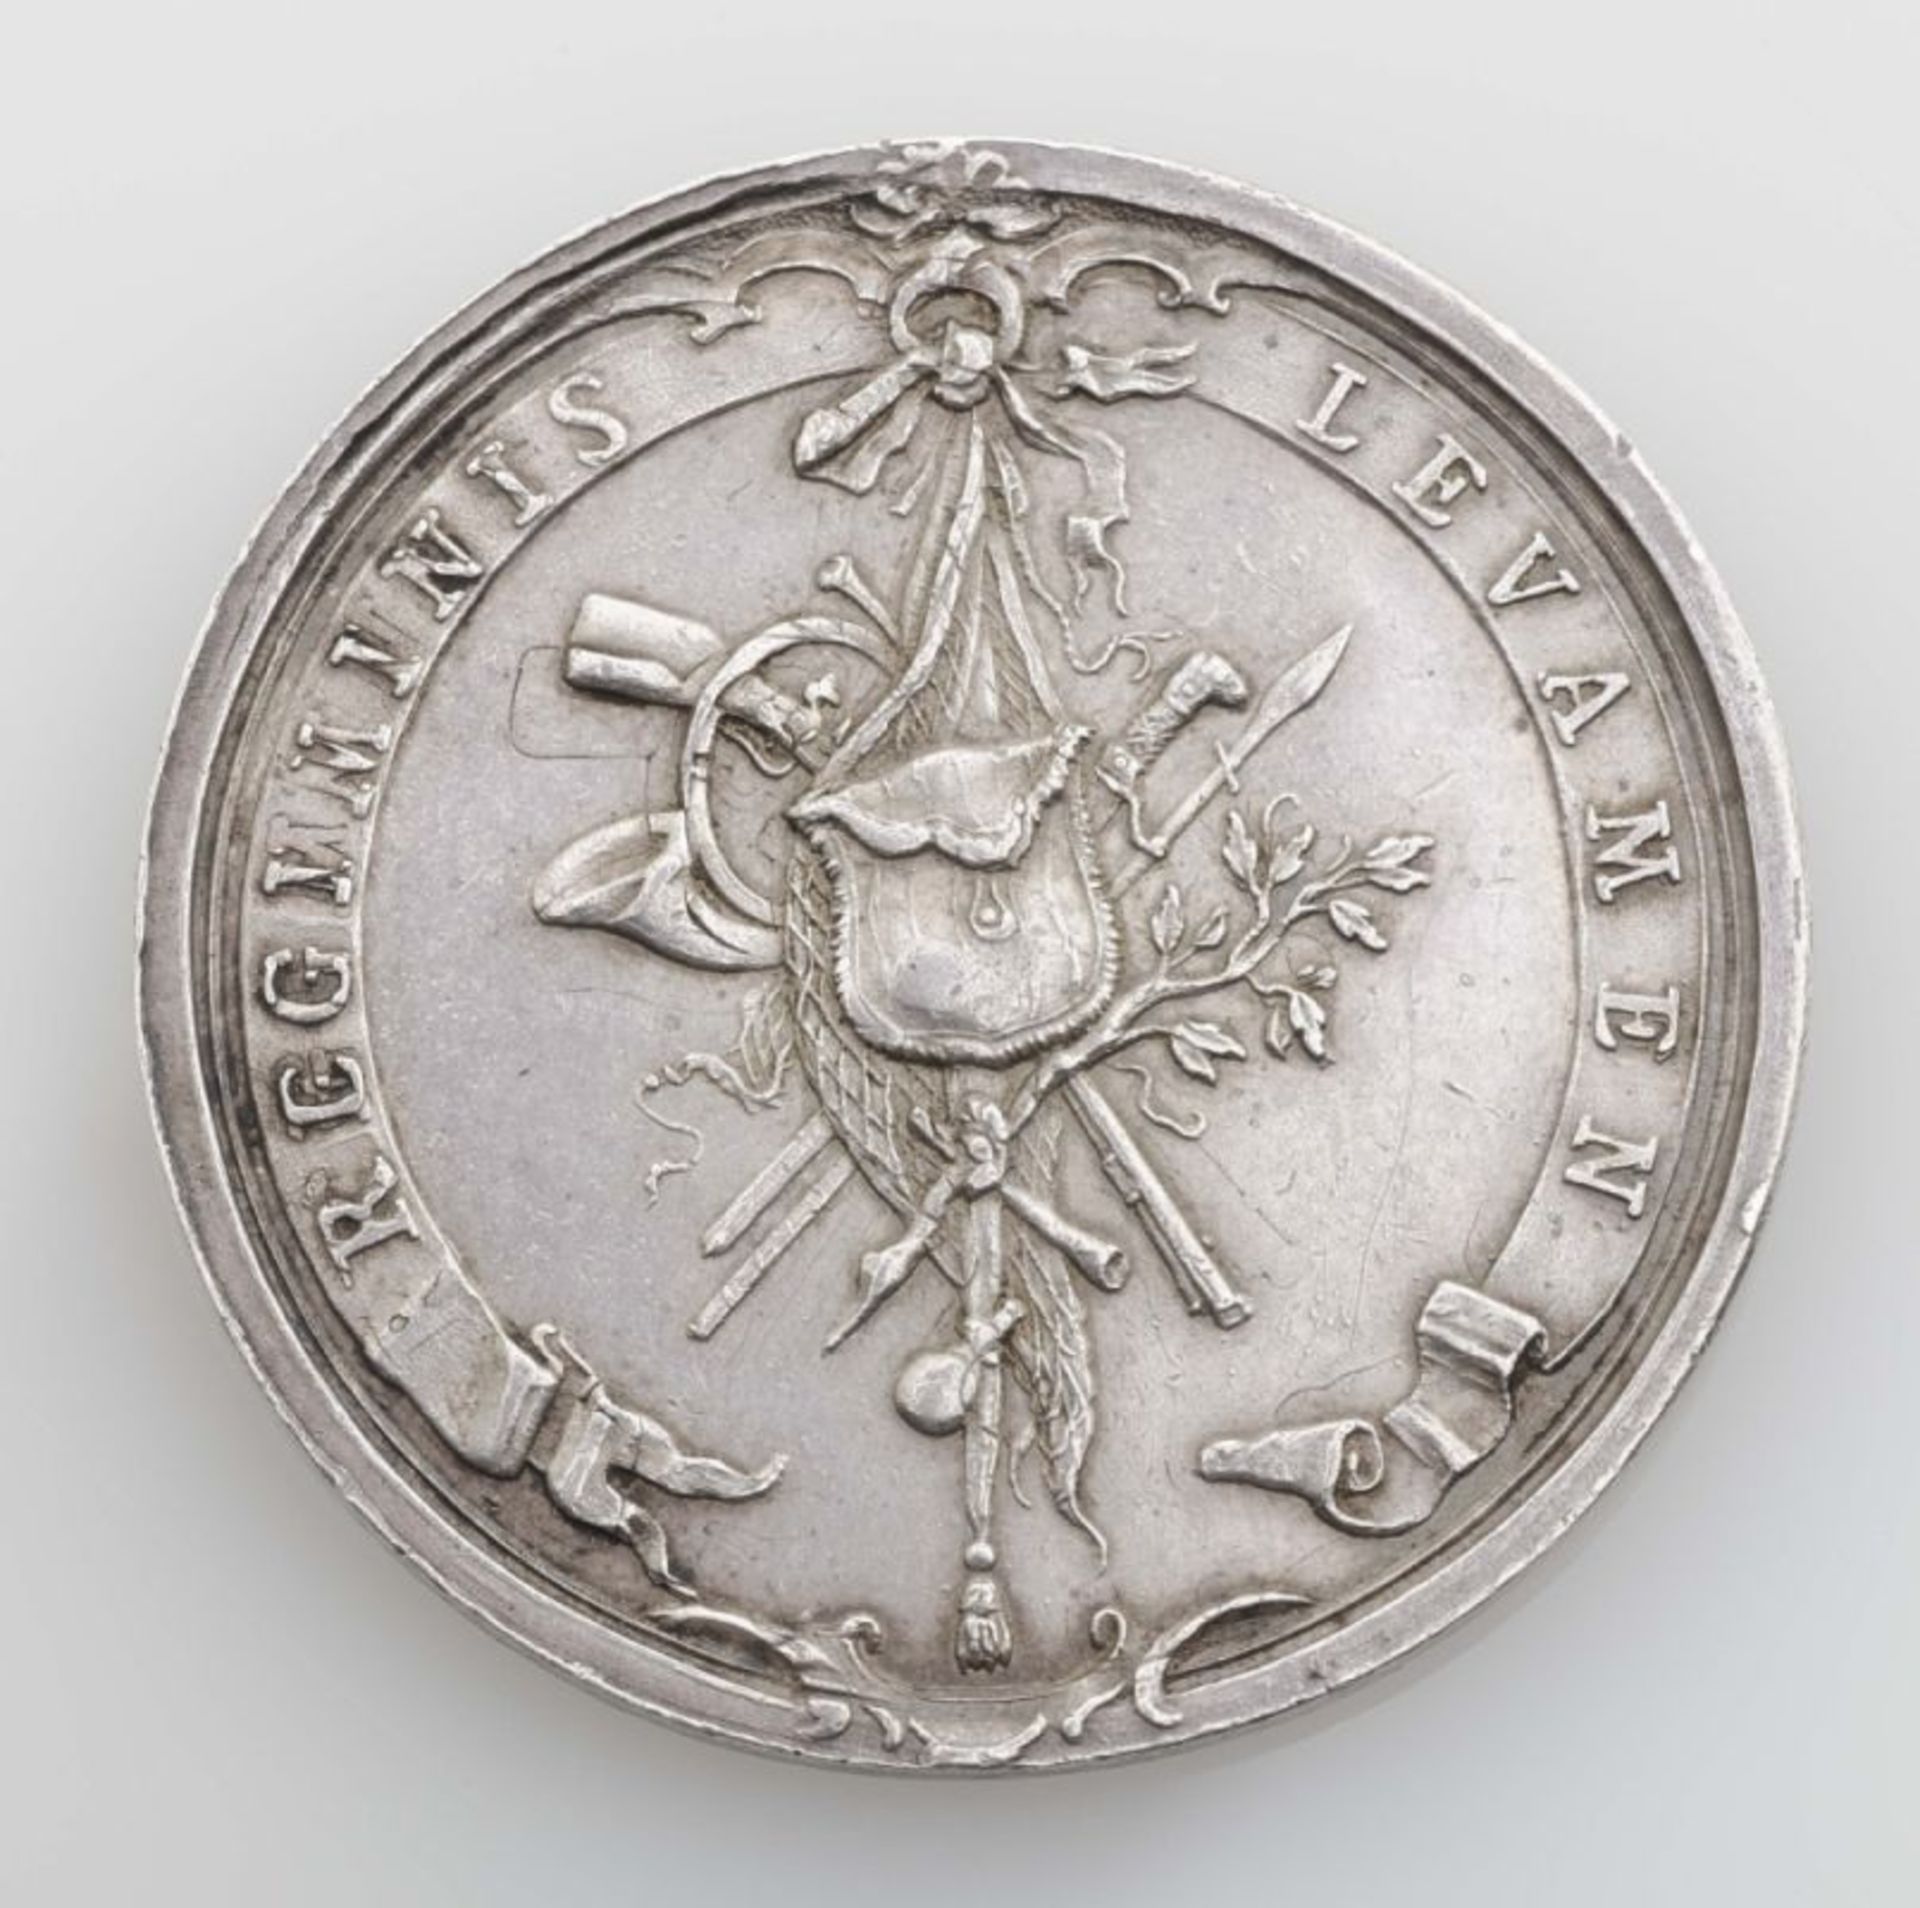 Münze. Jagdtaler. o.J. Um 1750. Stempel von Anton Schäfer. Feine Patina. Winzige Randfehler und - Bild 2 aus 2